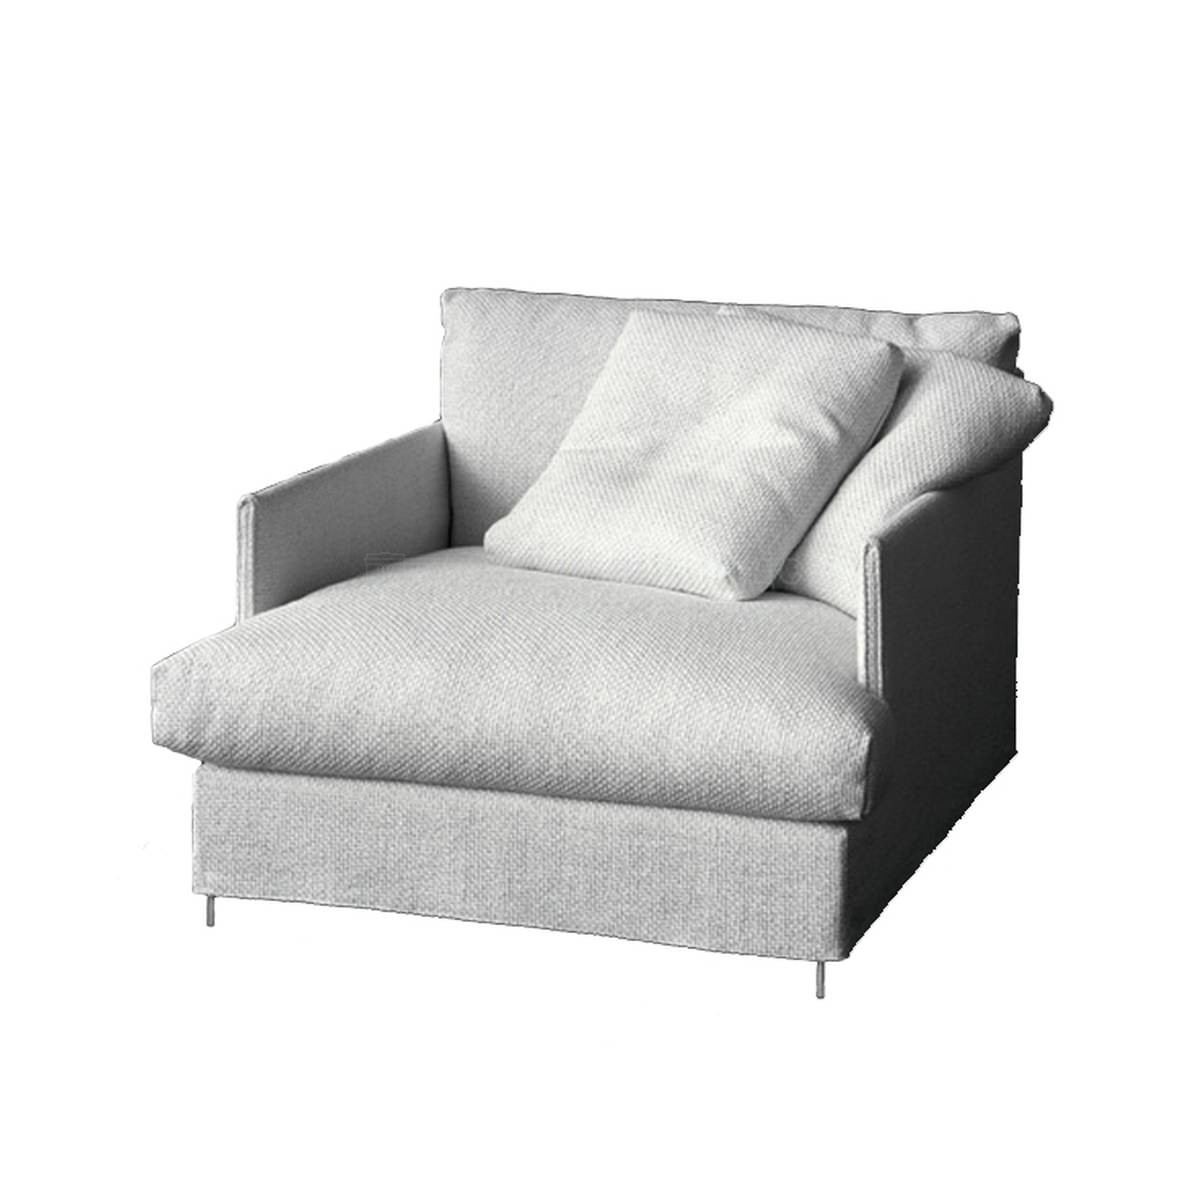 Кресло Chemise armchair из Италии фабрики LIVING DIVANI